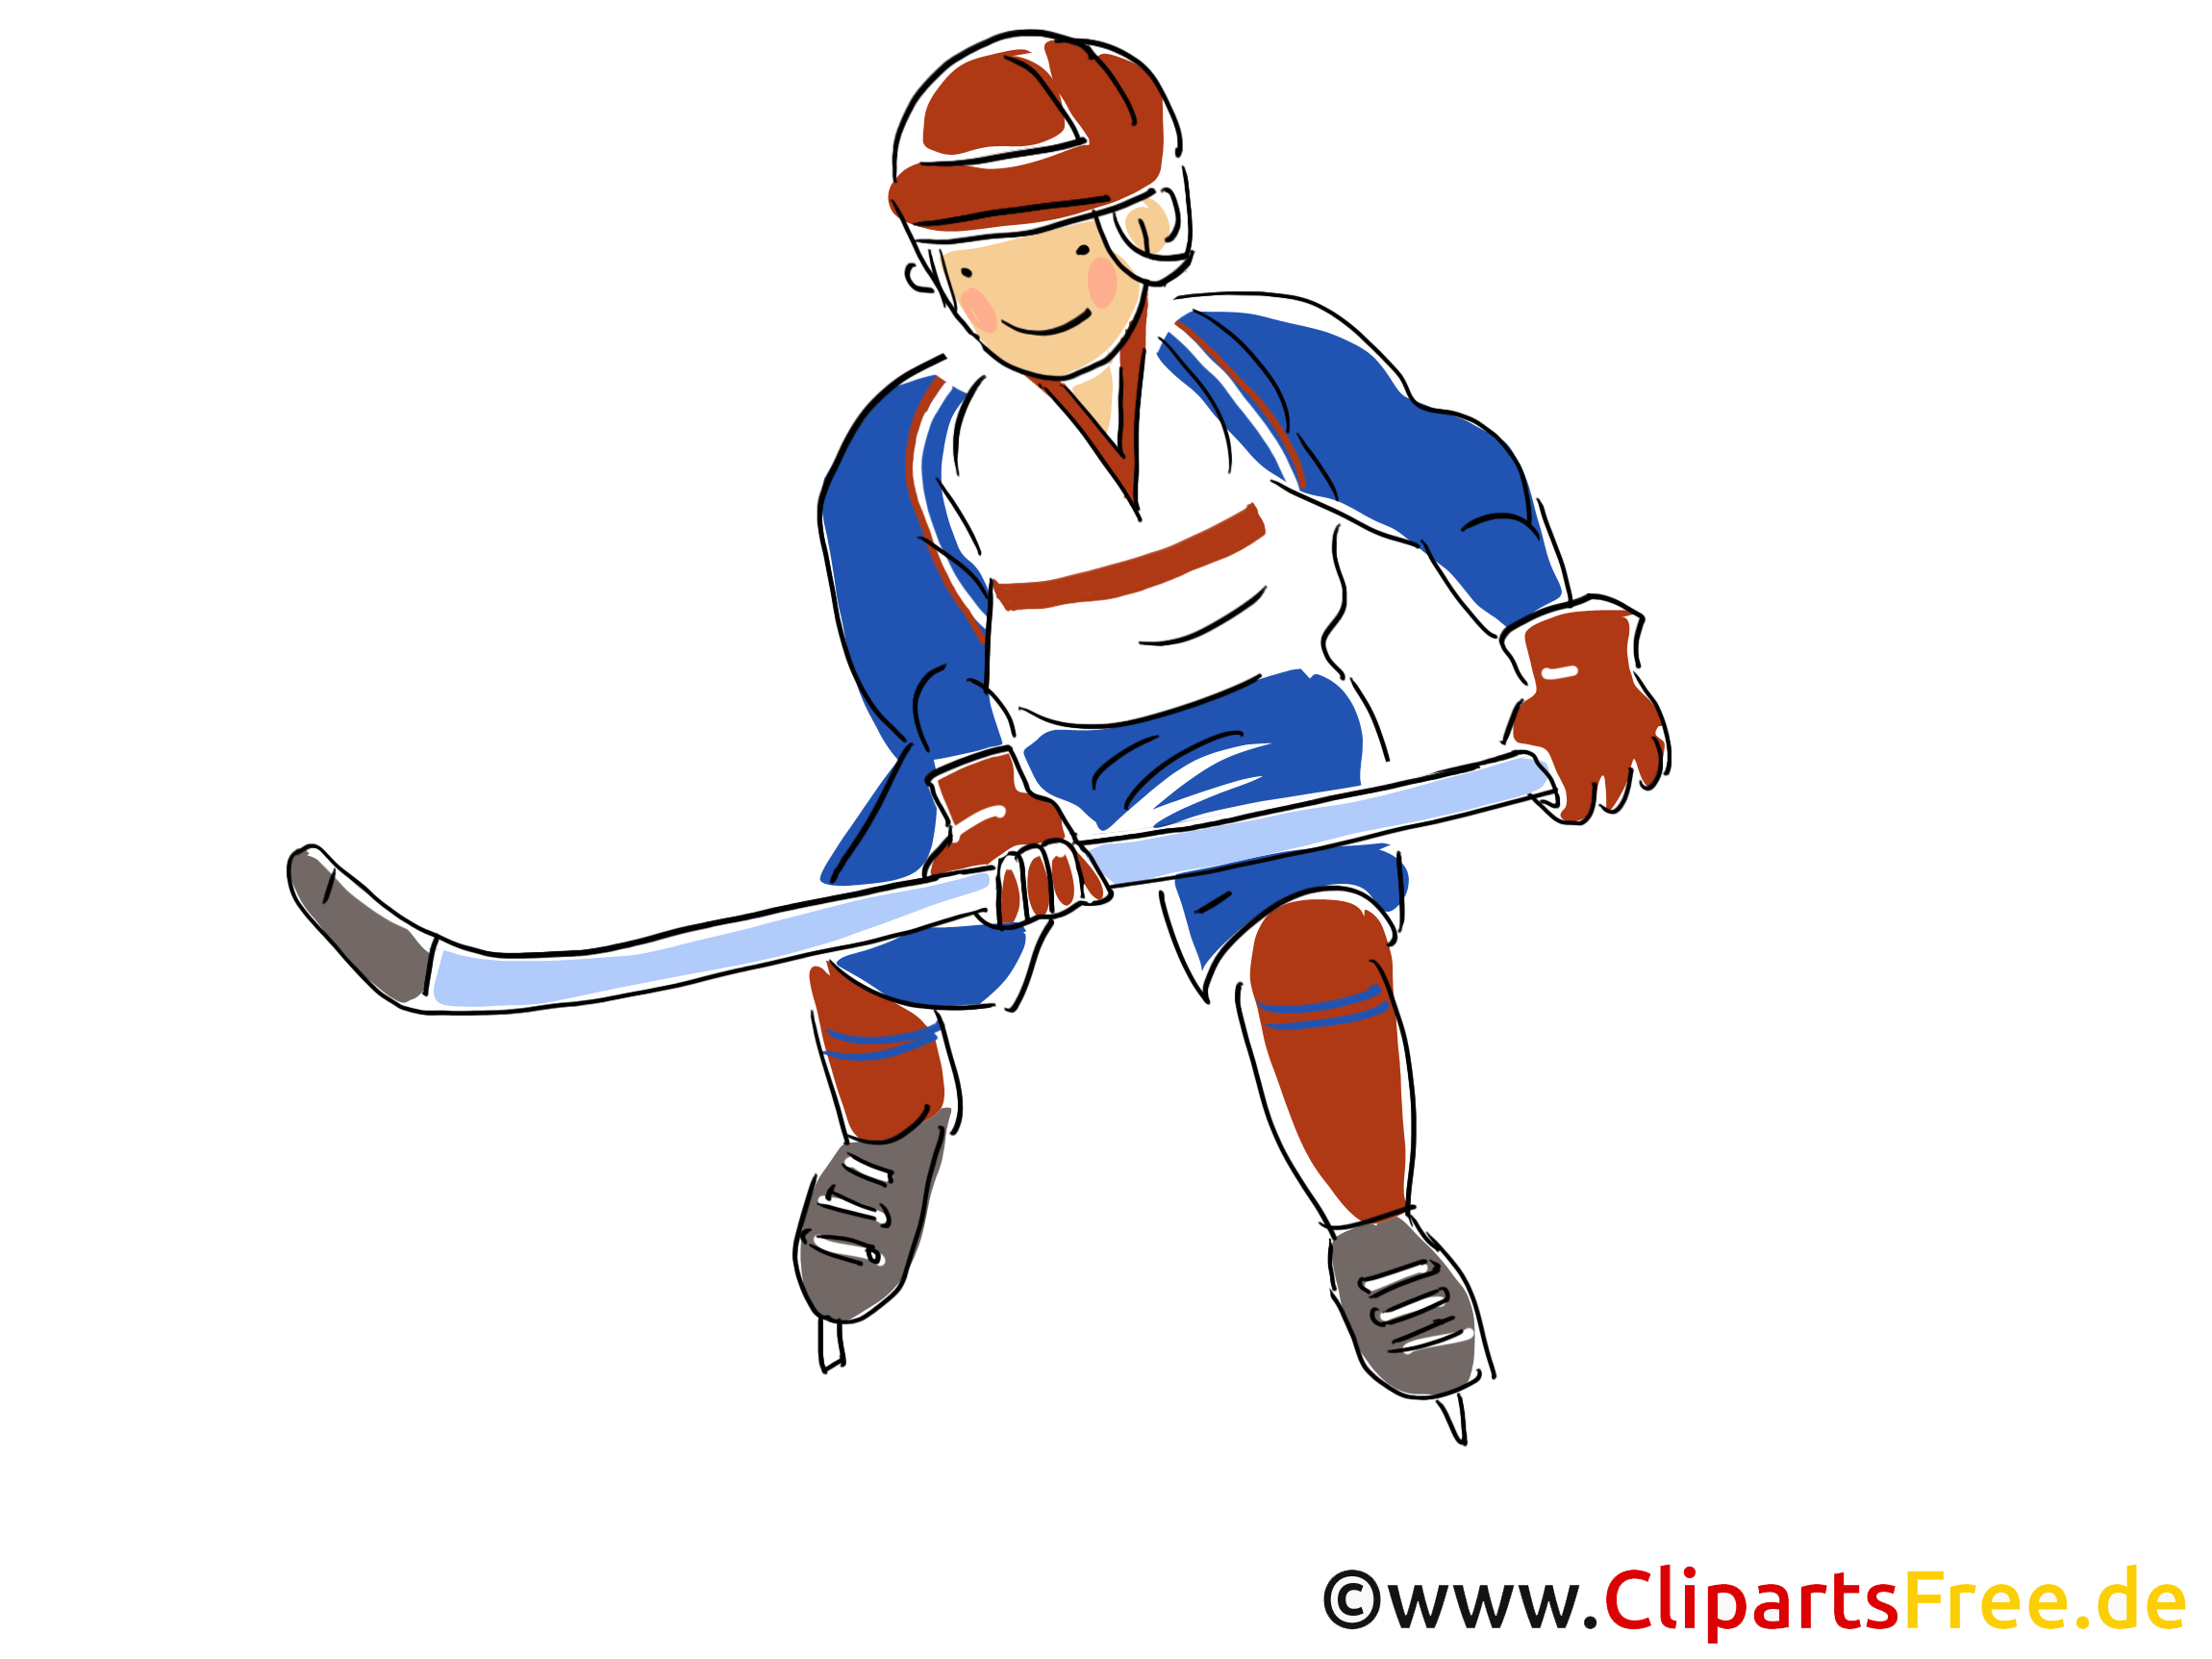 Image gratuite hockeyeur - Hockey illustration